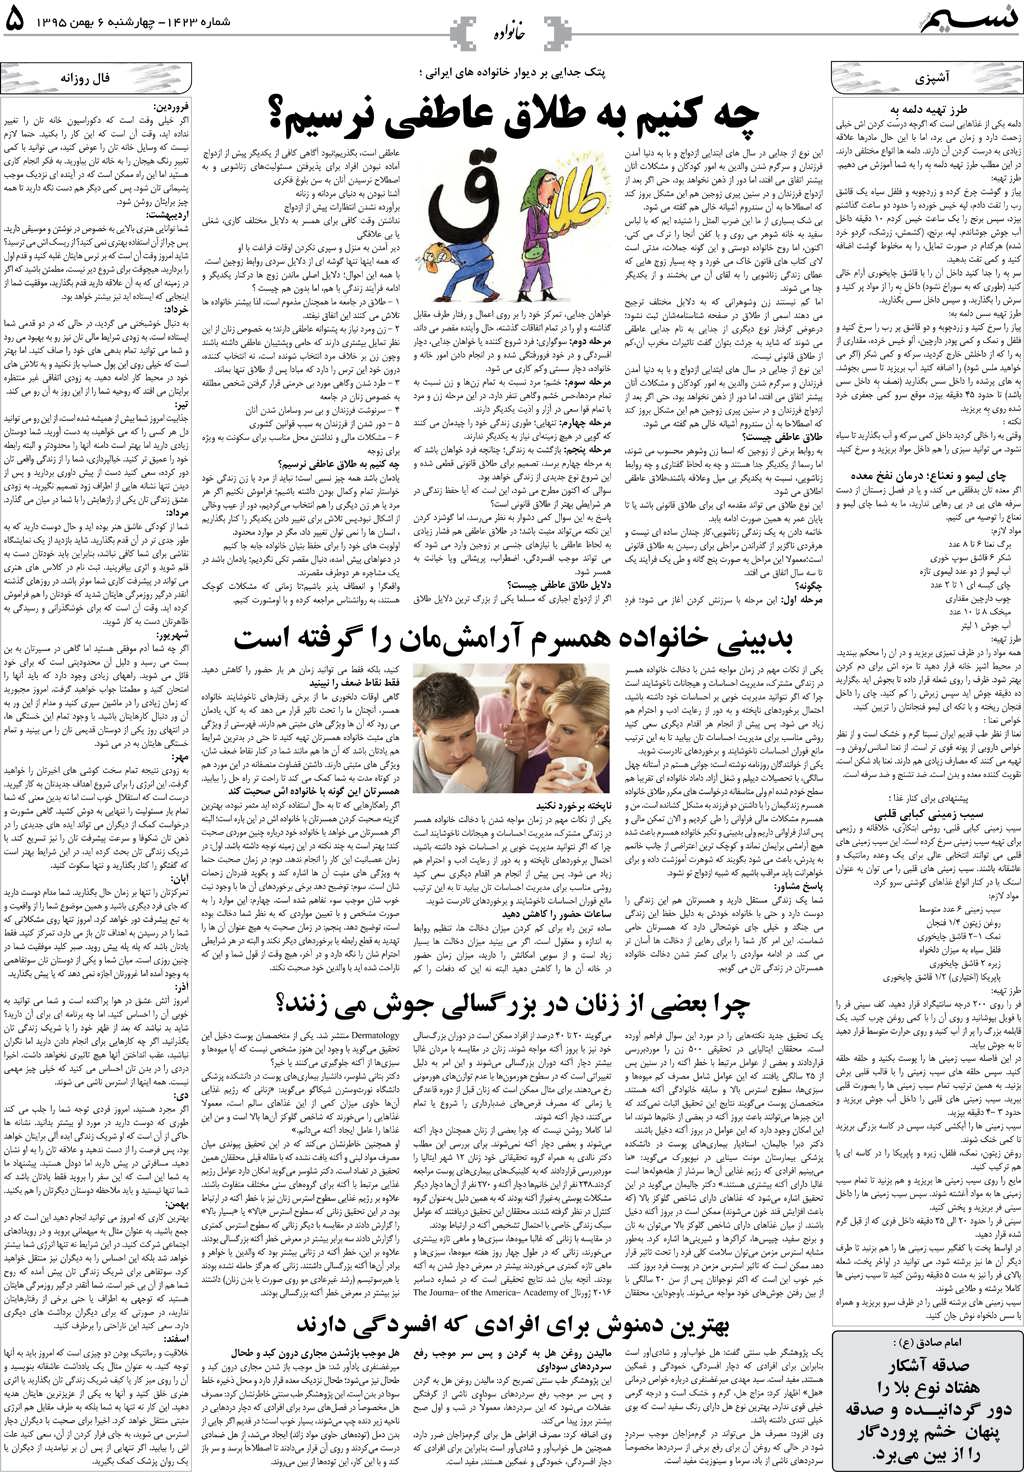 صفحه خانواده روزنامه نسیم شماره 1423